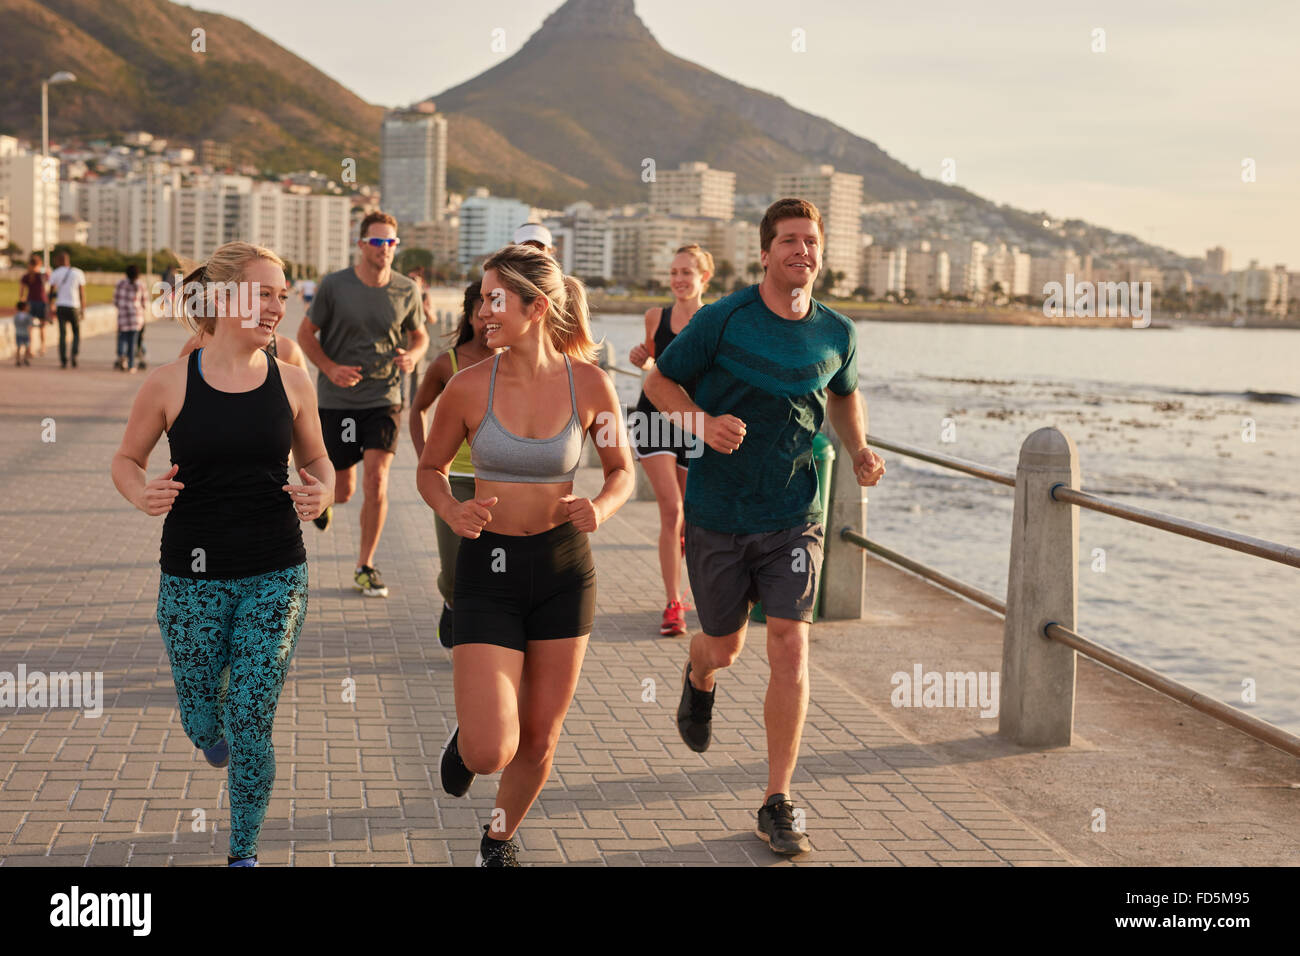 Junge Menschen, die entlang der Strandpromenade. Passen Sie junge Läufer im freien training am Meer, mit zwei weiblichen Athleten cha Stockfoto